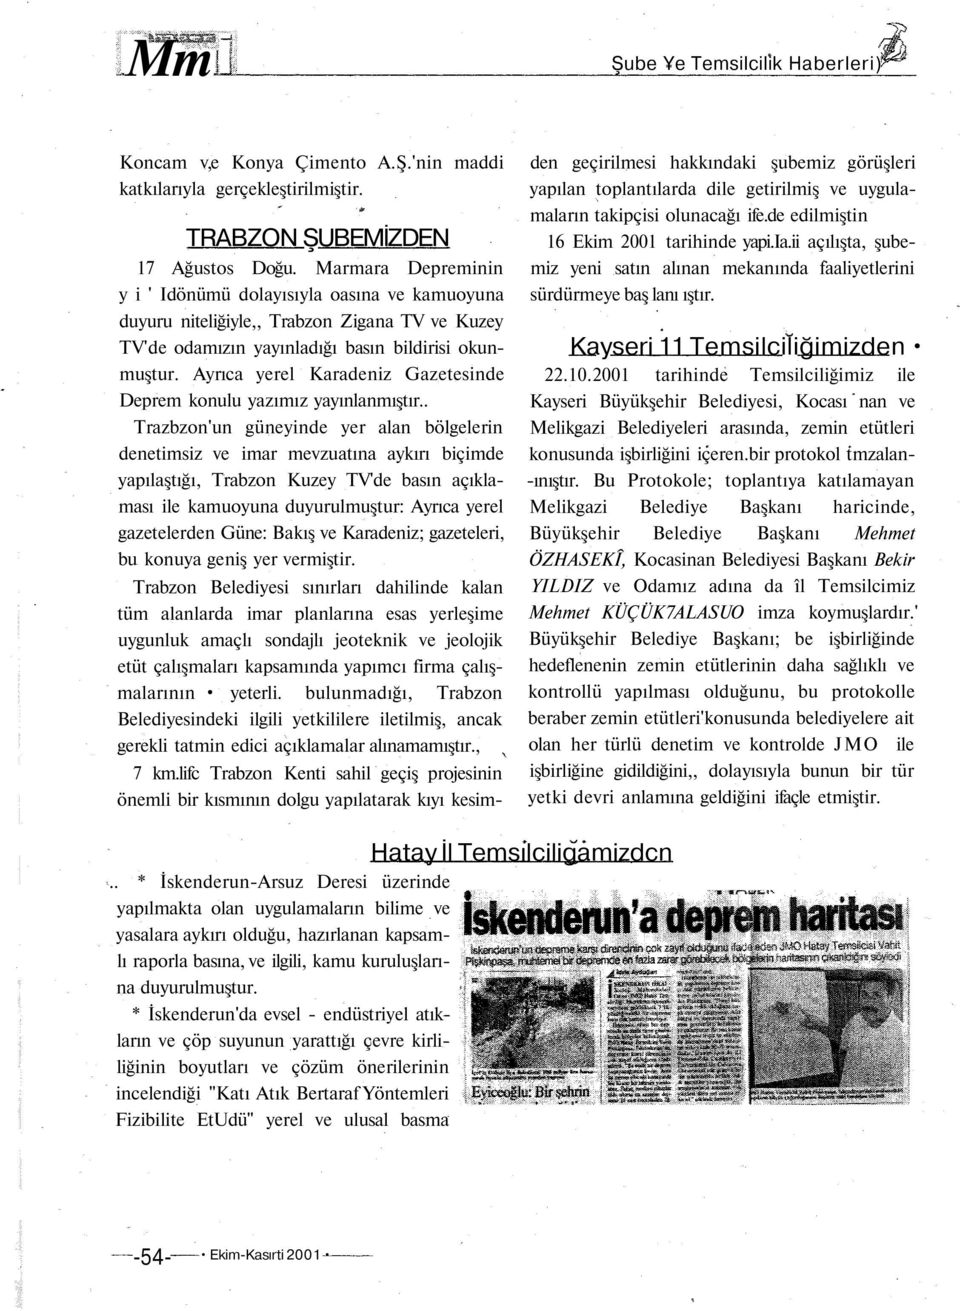 Ayrıca yerel Karadeniz Gazetesinde Deprem konulu yazımız yayınlanmıştır.